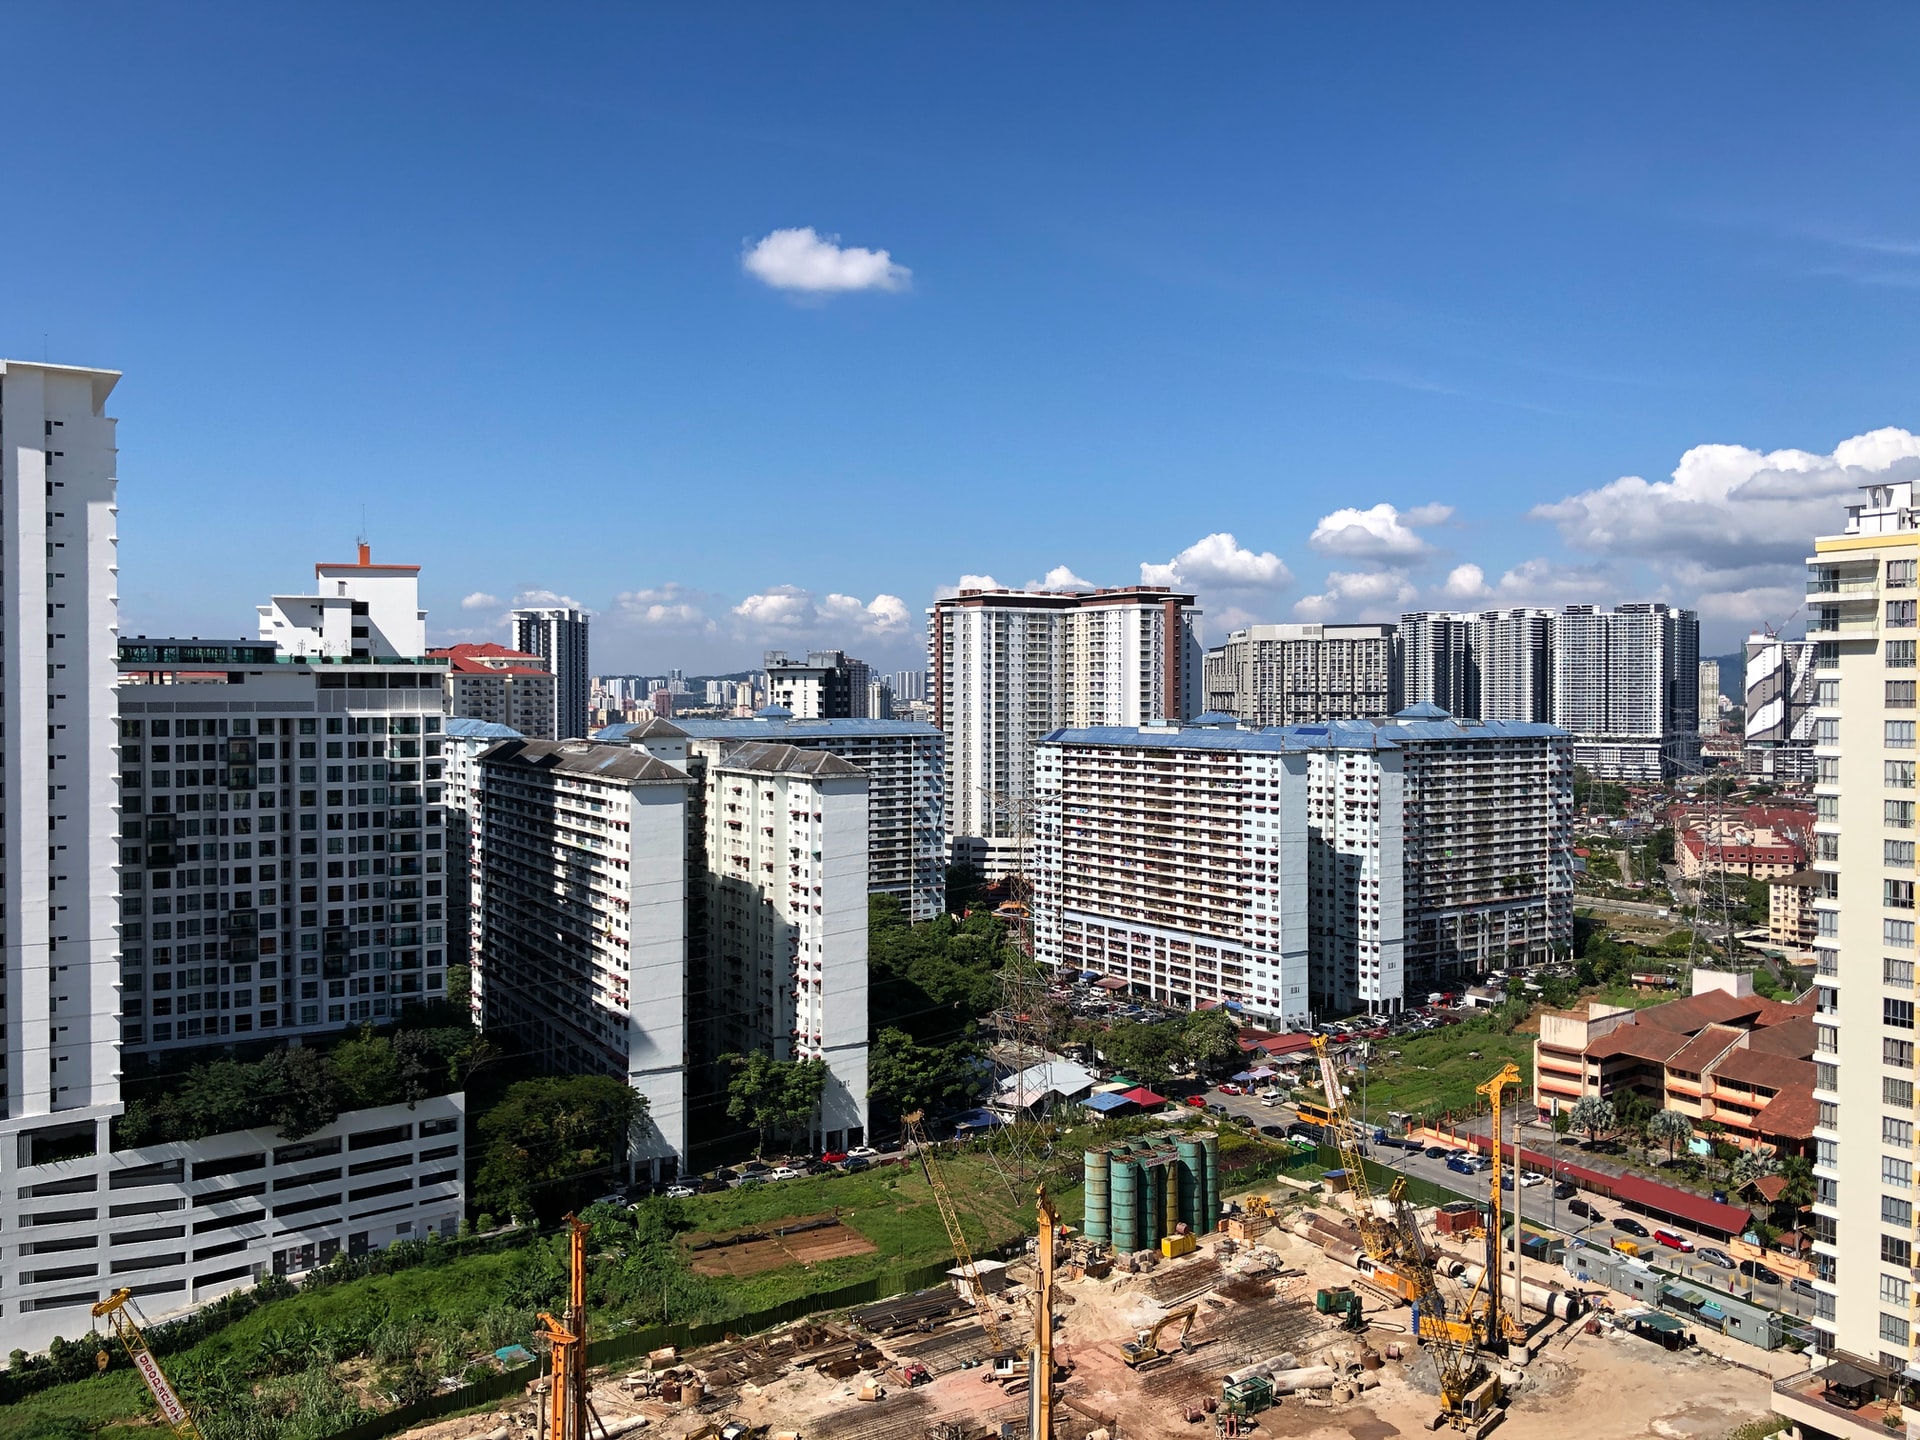 Urban planning in Malaysia